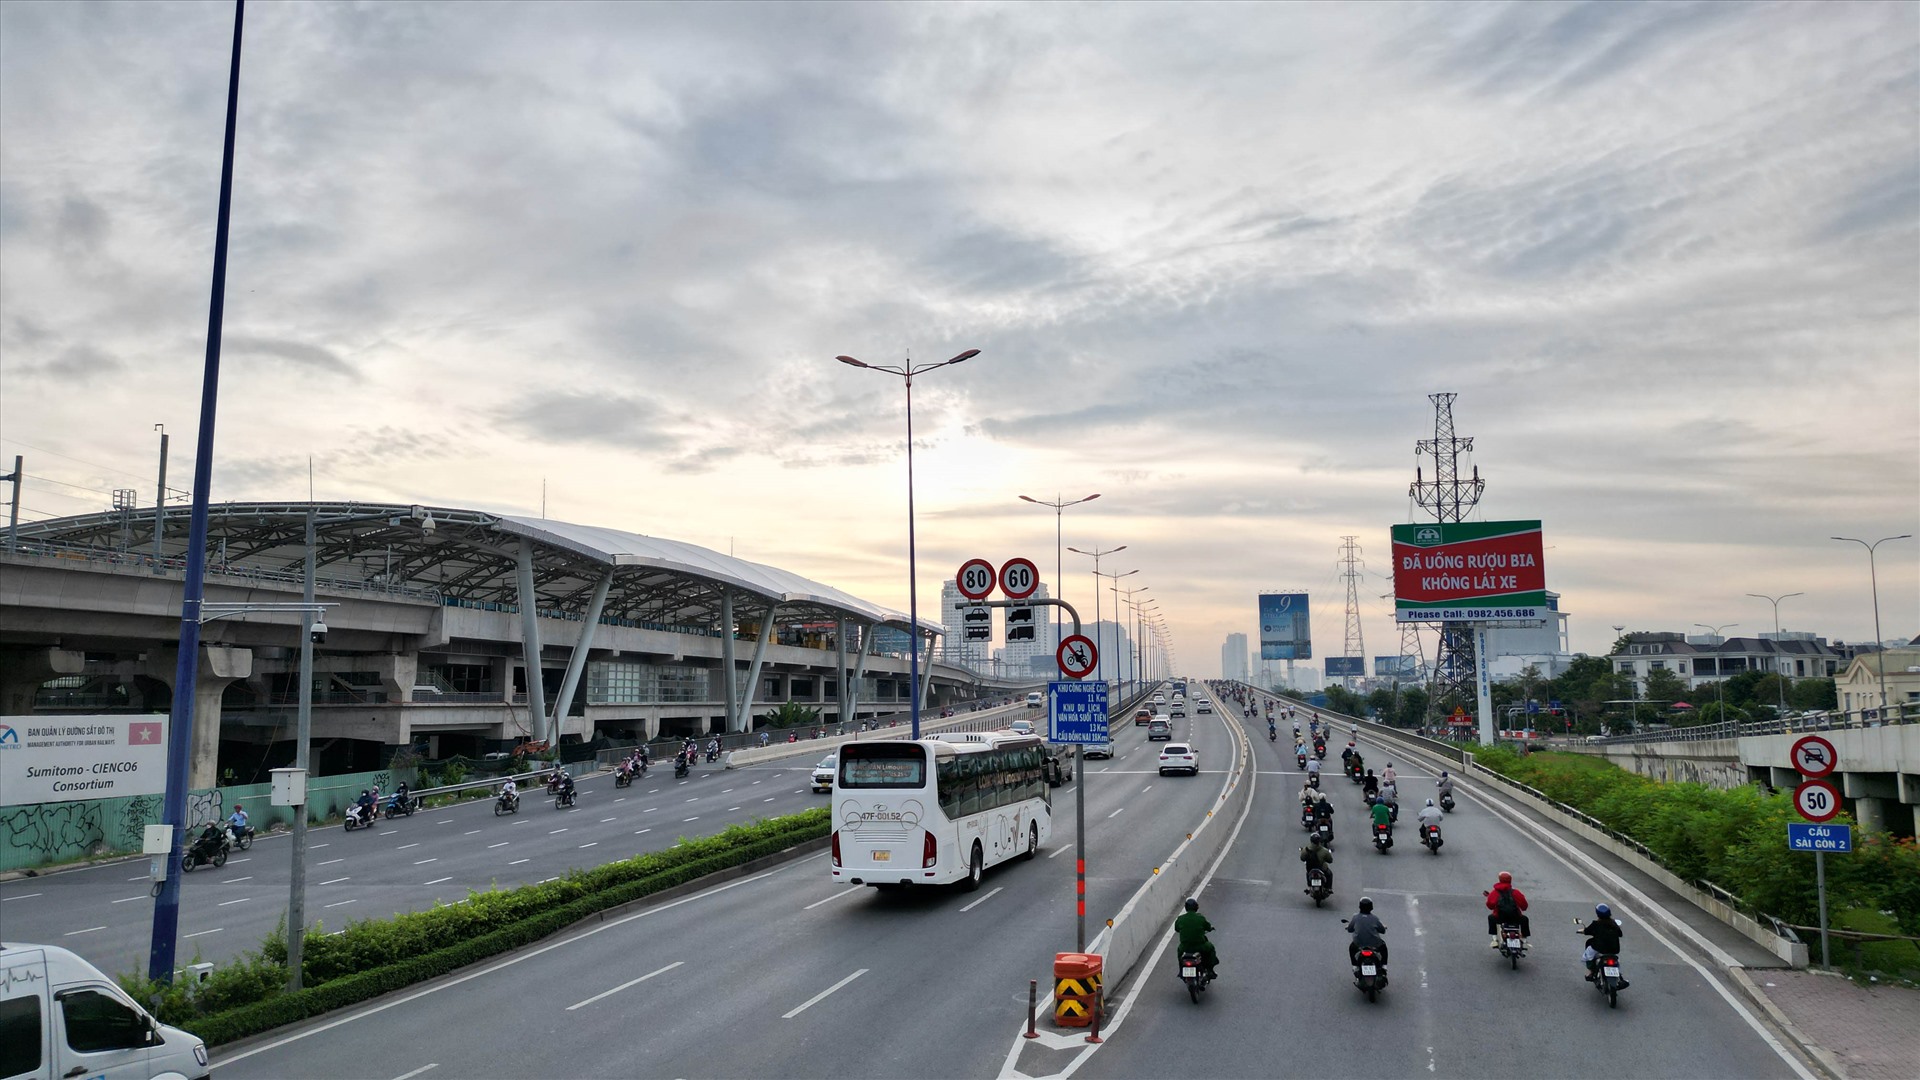 Cầu Sài Gòn nối đường Điện Biên Phủ (quận Bình Thạnh) với đường Võ Nguyên Giáp (xa lộ Hà Nội cũ) xây dựng từ năm 1958, dài 986 m. 